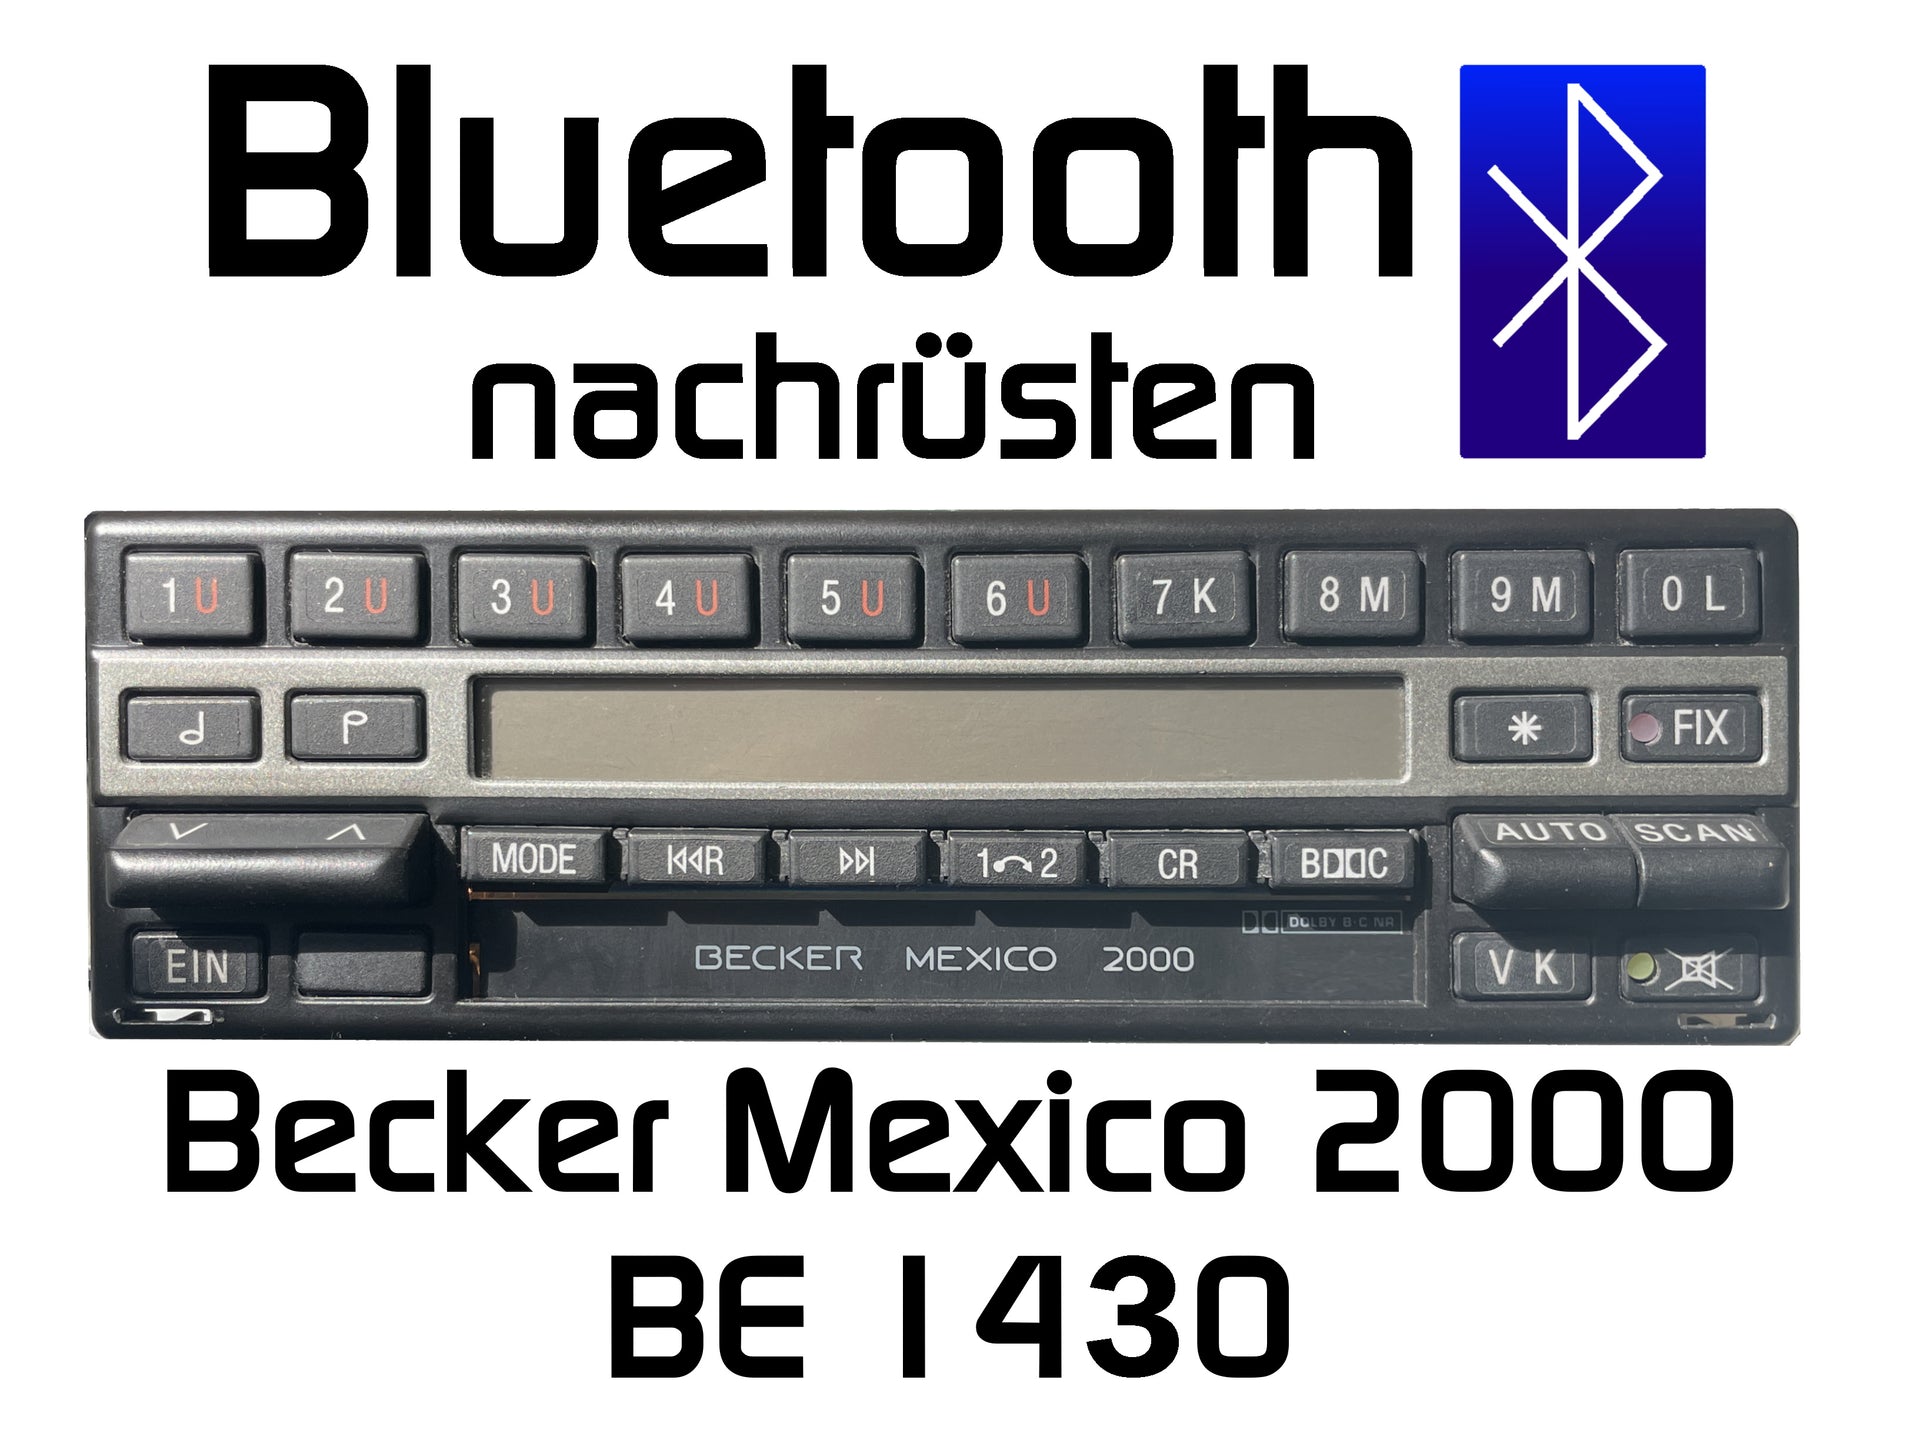 Autoradio Becker Mexico 2000 BE1430 Bluetooth nachrüsten